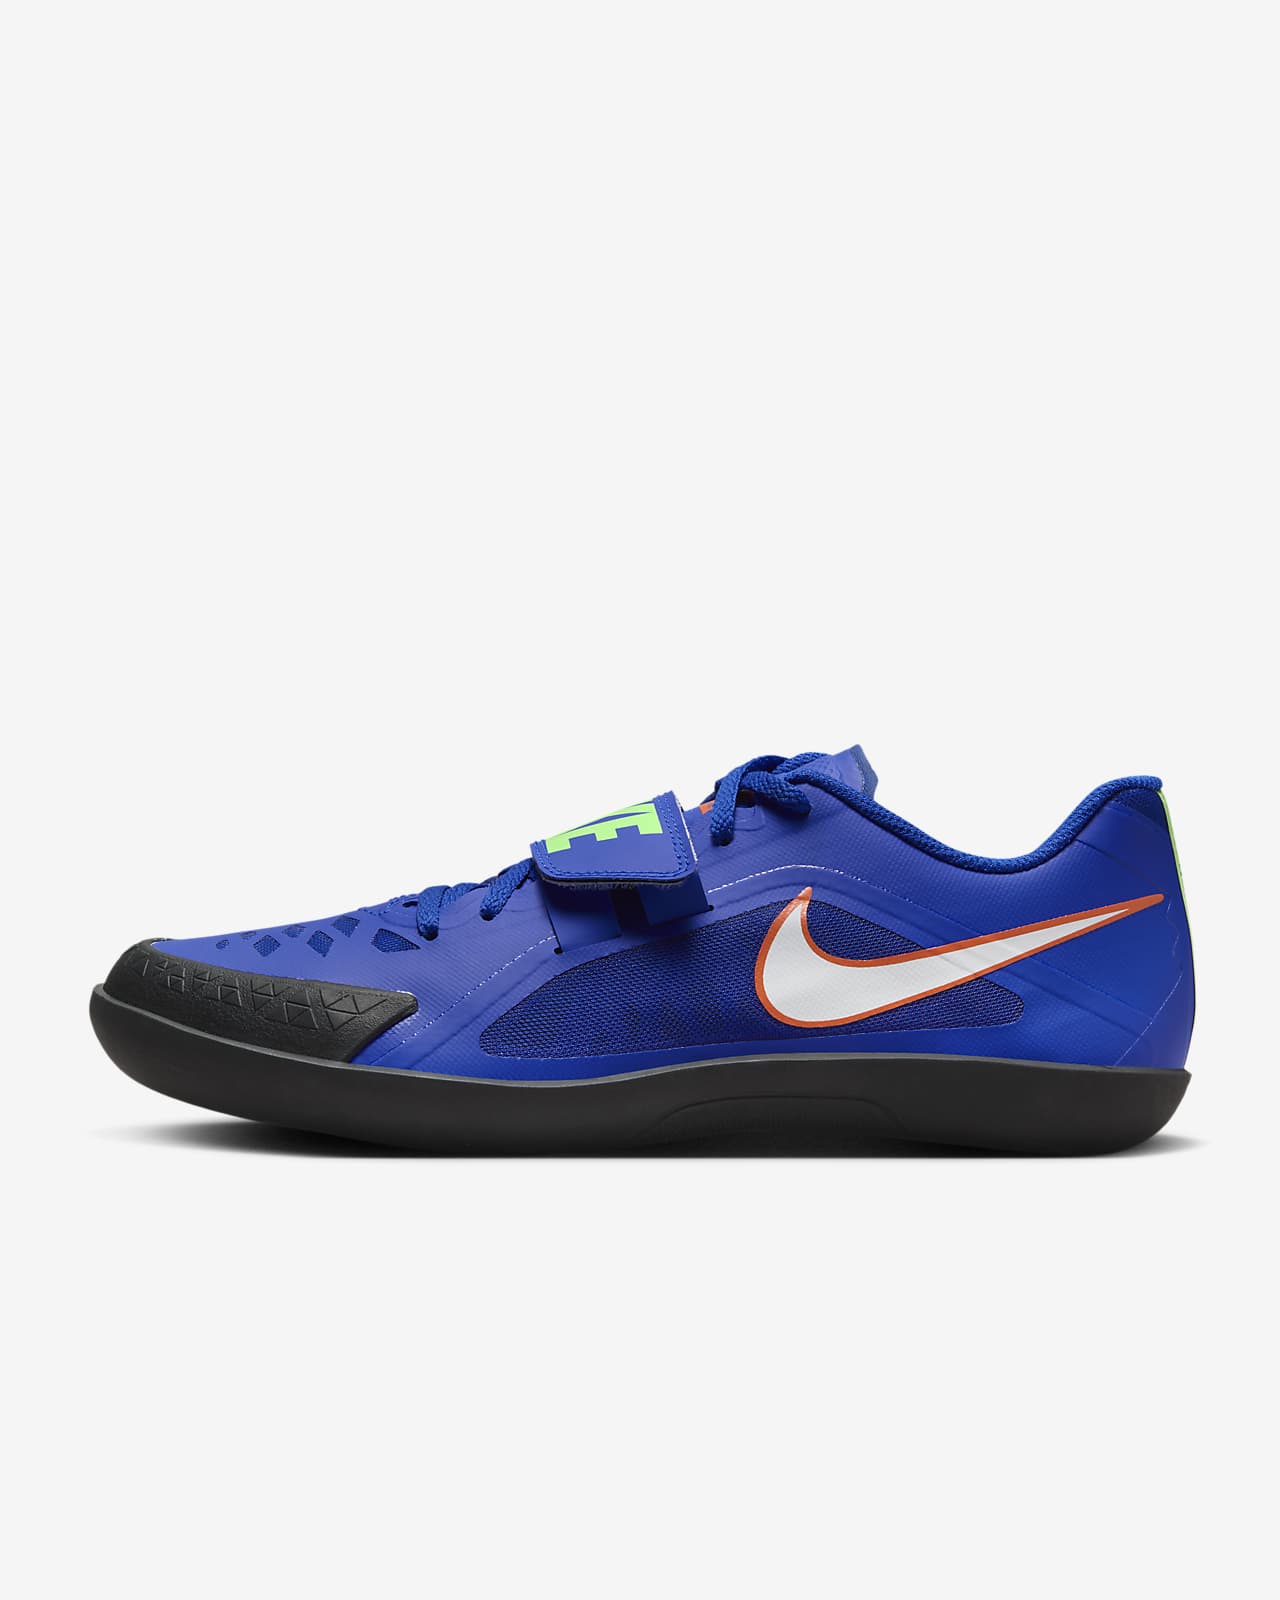 Παπούτσια στίβου για αθλήματα ρίψεων Nike Zoom Rival SD 2